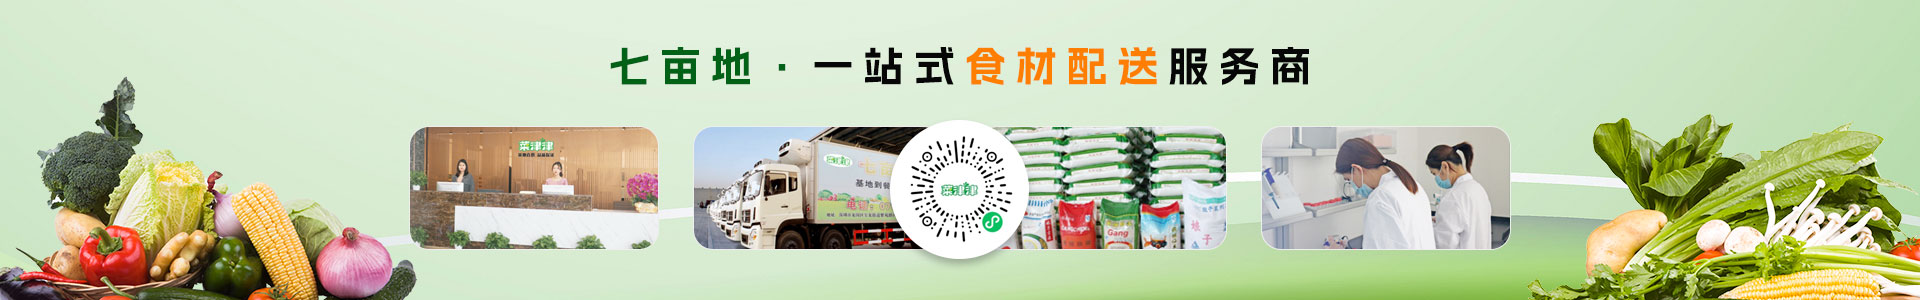 深圳市七亩地农产品实业有限公司-白萝卜配送